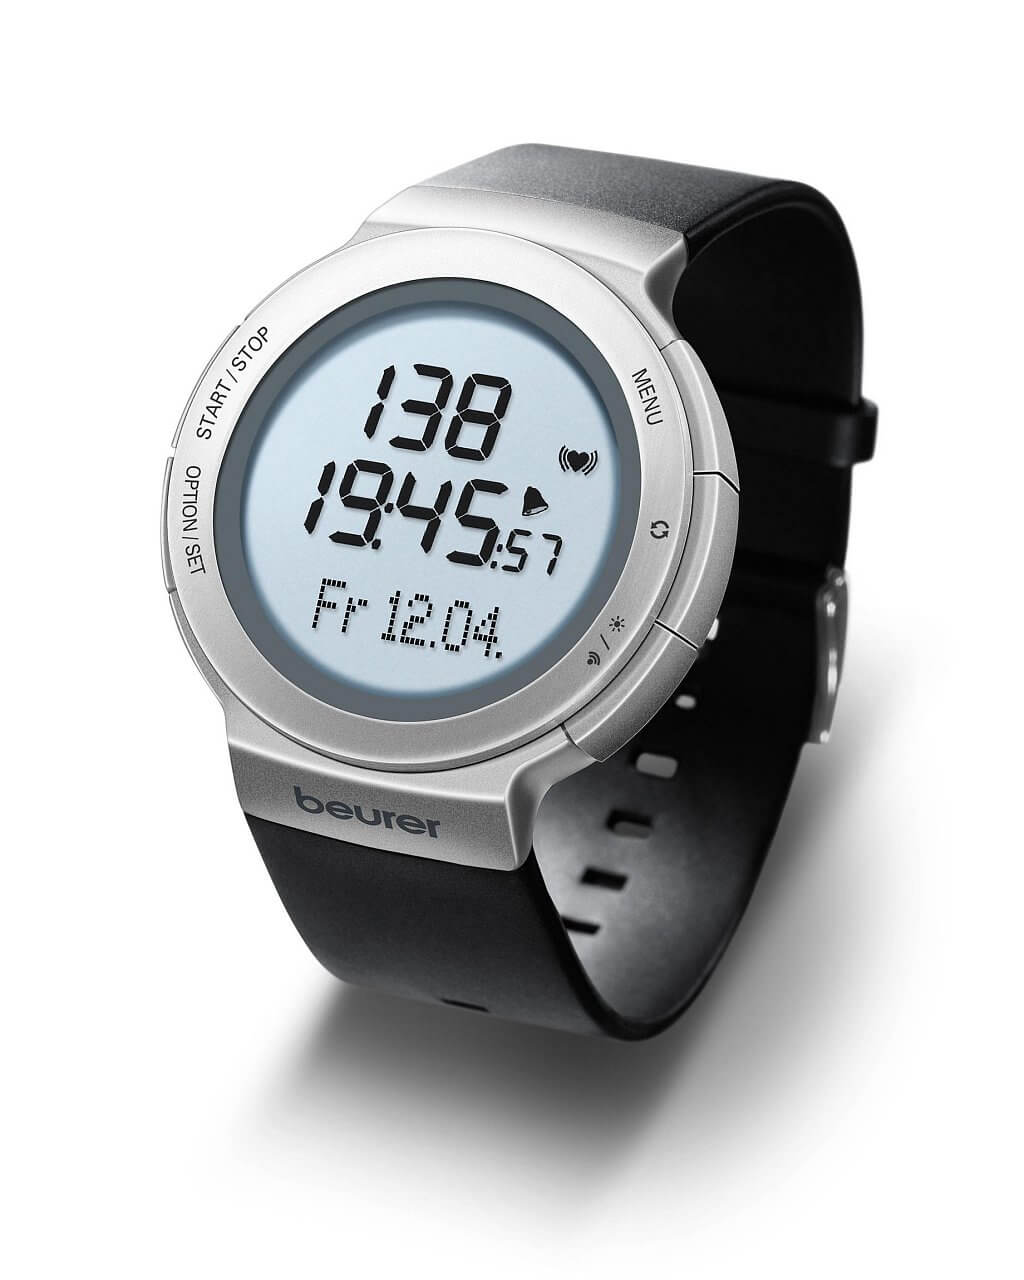 Športové hodinky s pulsoměr Beurer PM80